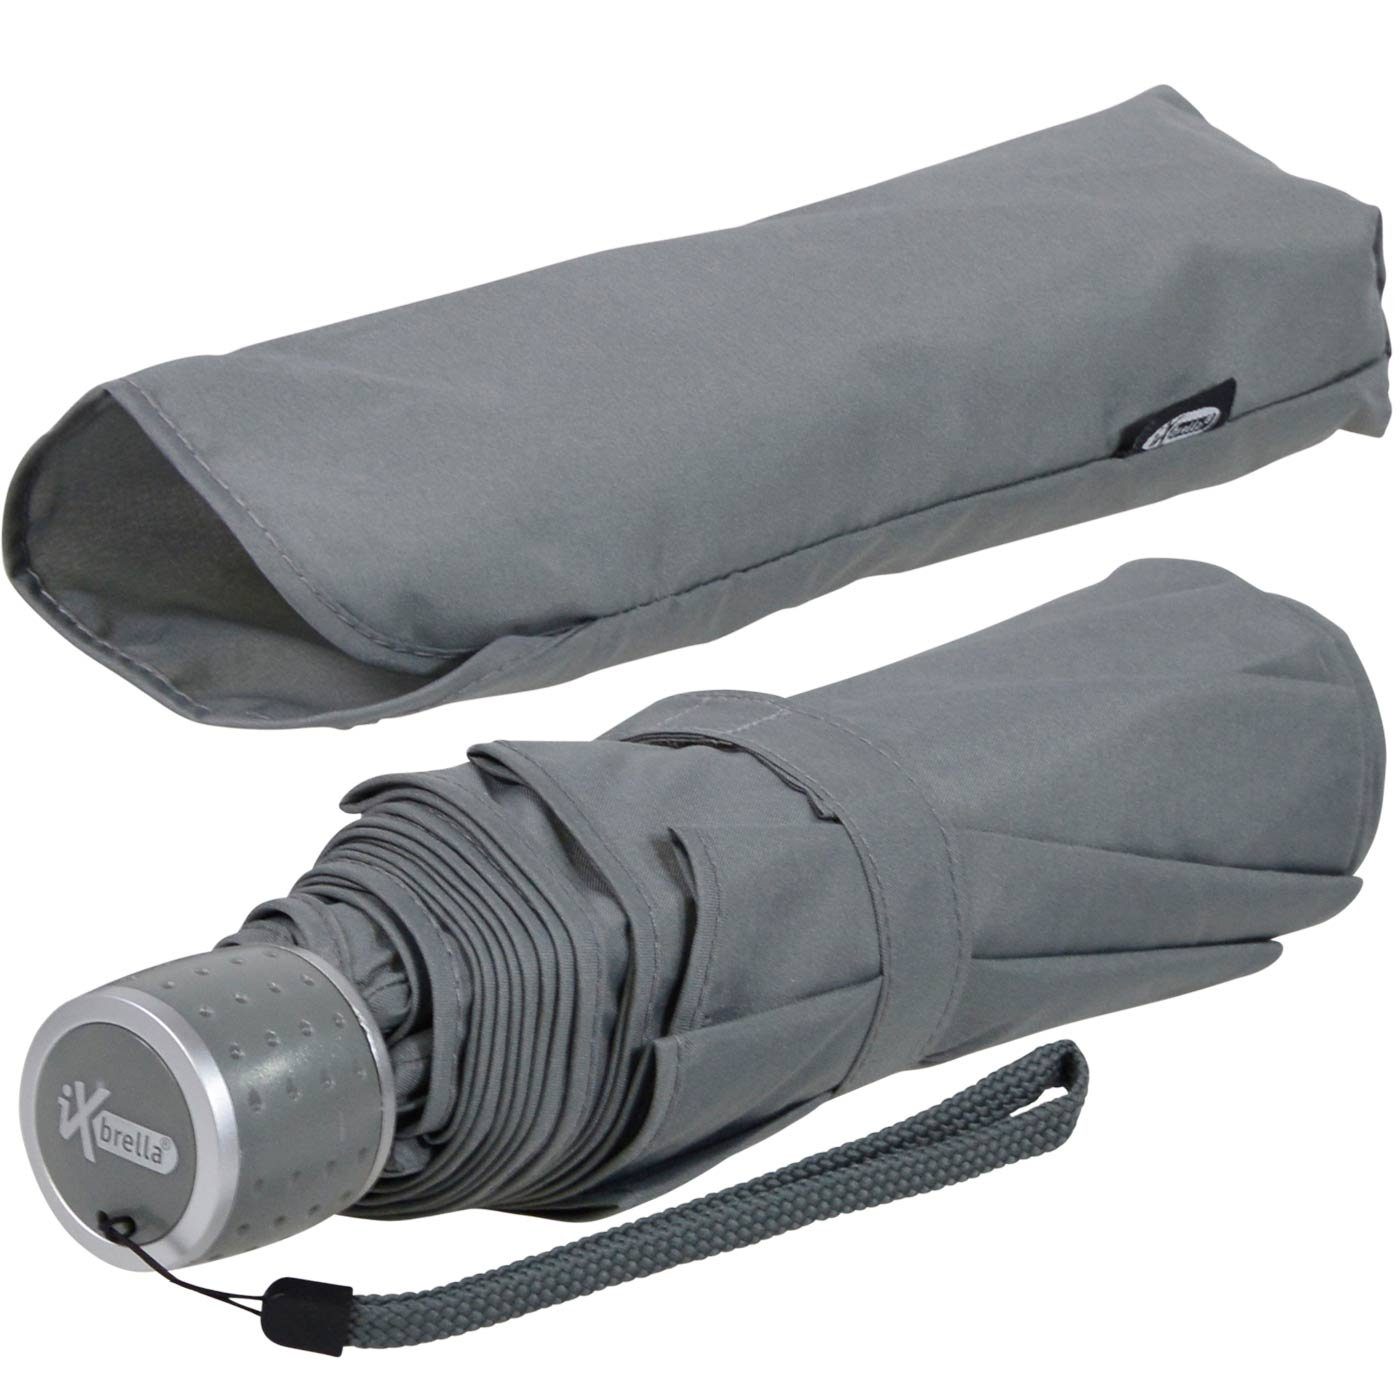 großem Ultra leicht, Taschenregenschirm mit iX-brella extra dezent - - Dach Light grau Mini